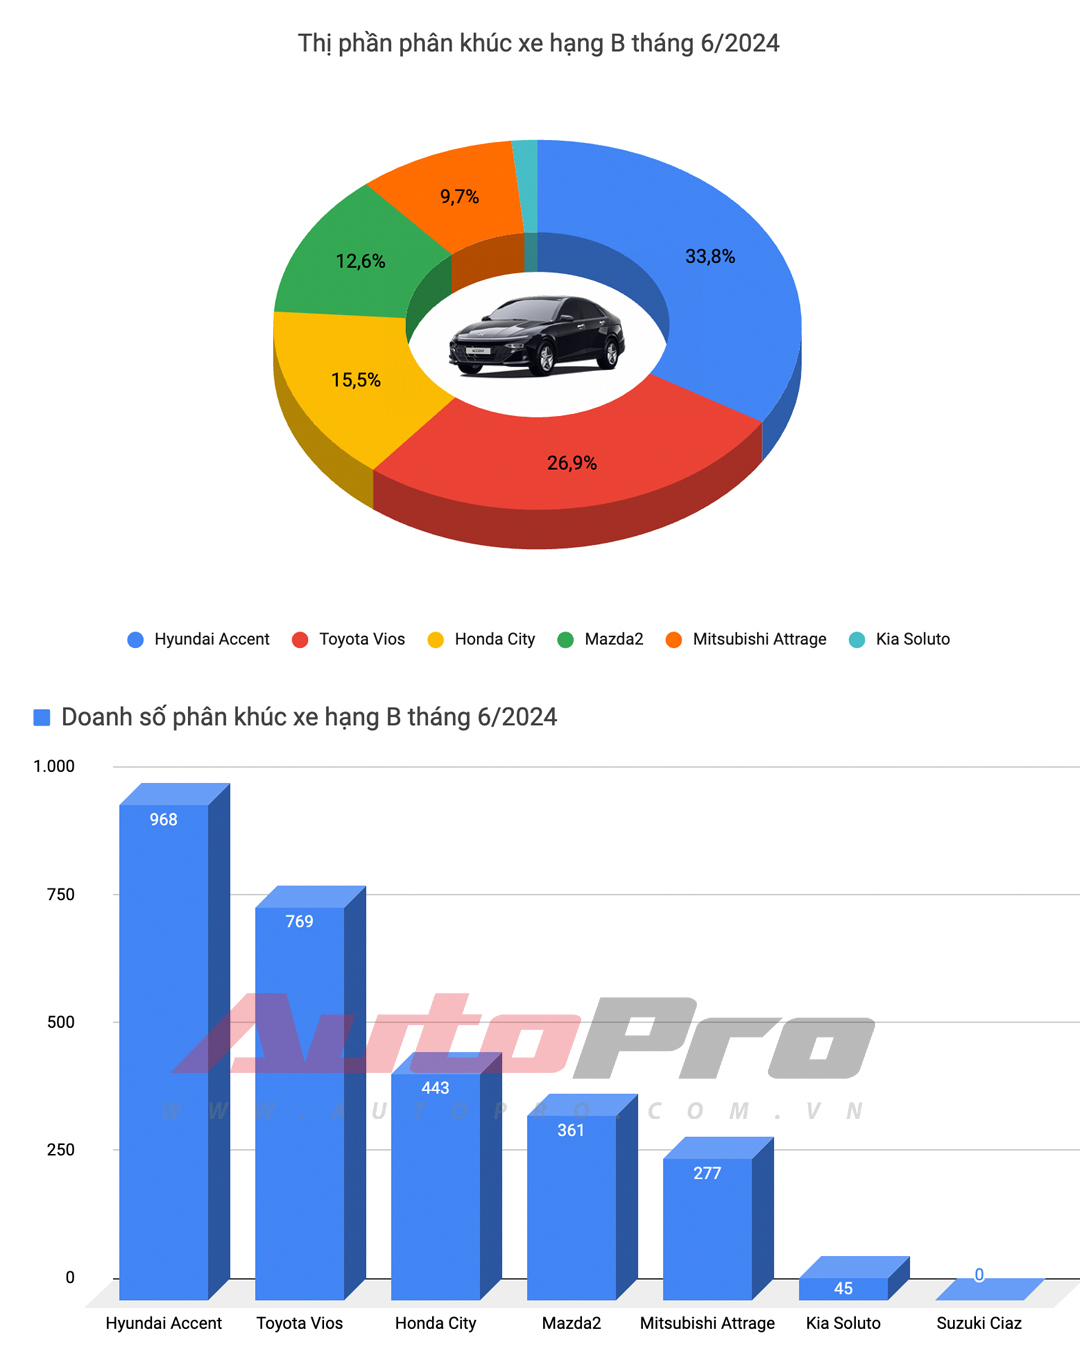 Mazda CX-5 bứt tốc, Xpander lần đầu đứng thứ 3 và những điều đáng chú ý của top 10 xe bán chạy tháng 6/2024- Ảnh 3.